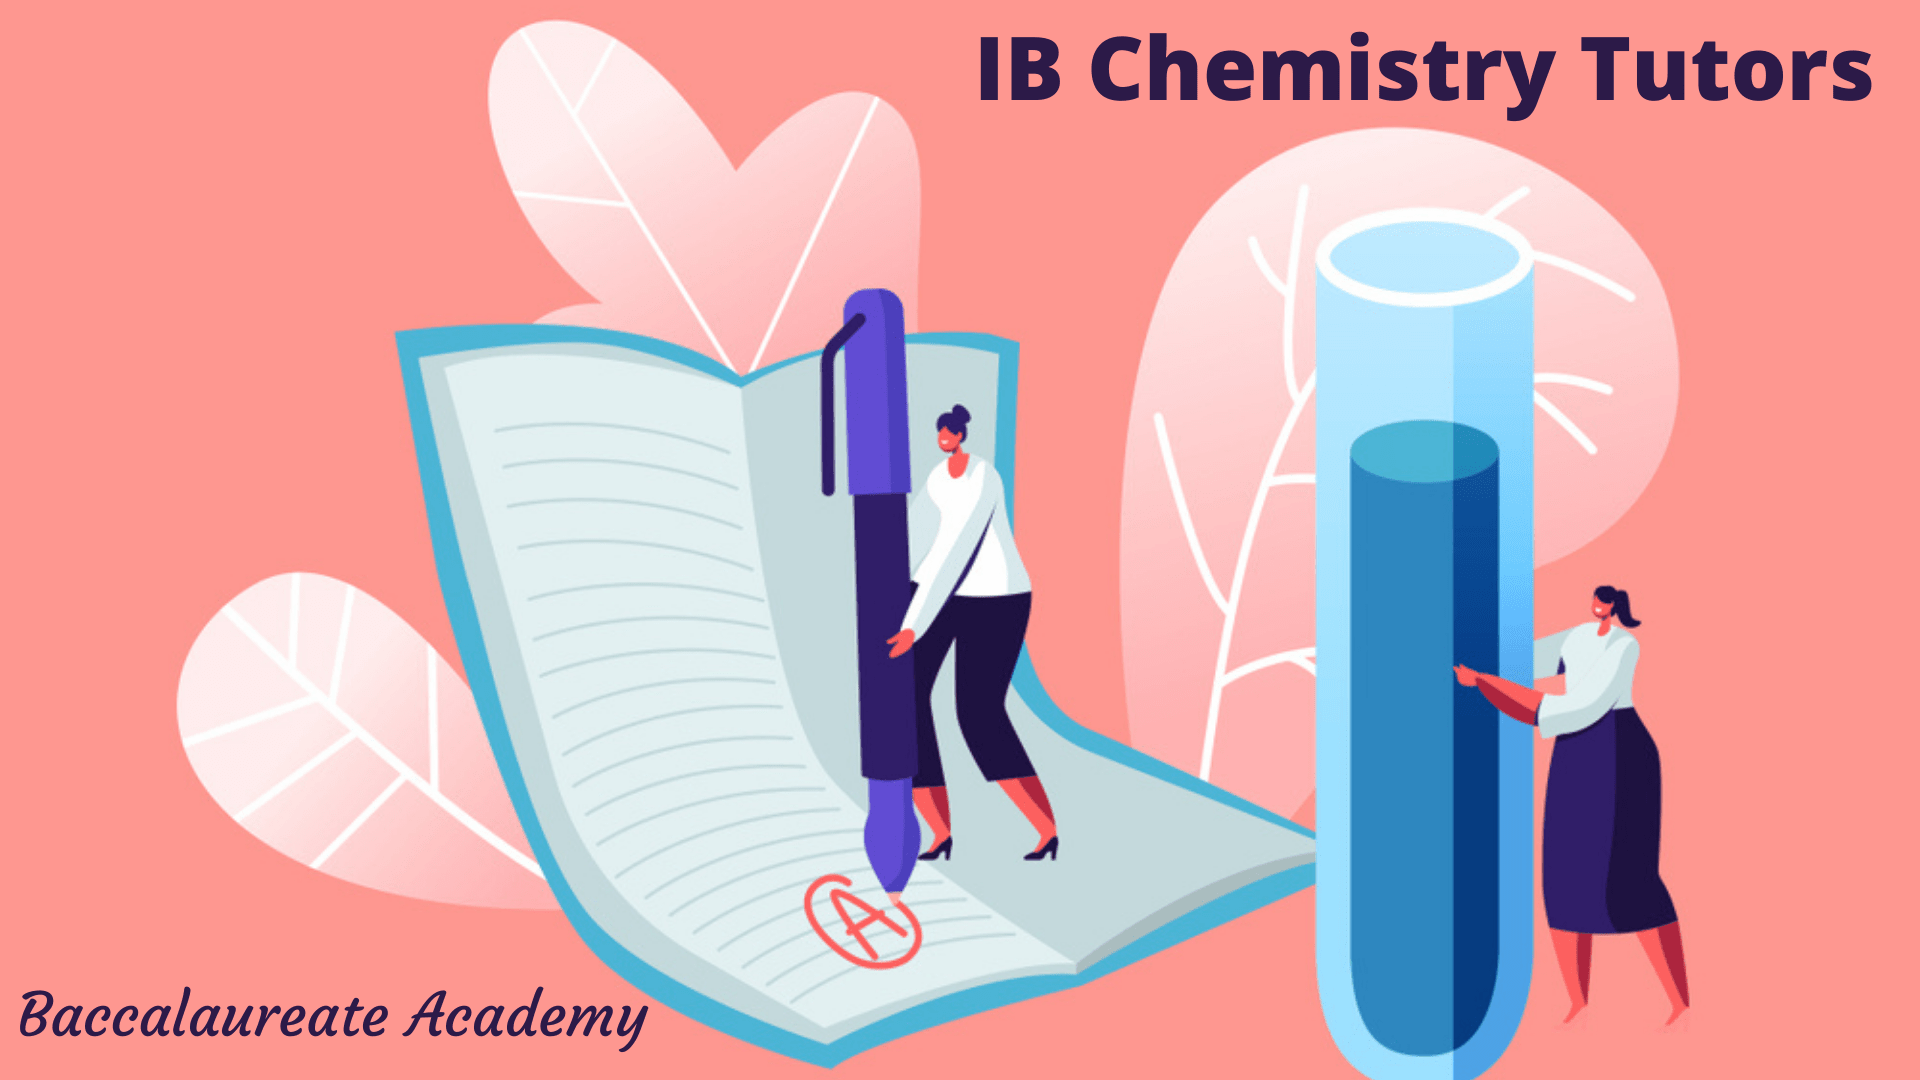 IB Chemistry Tutors | Online IB Chemistry Tutors- Baccalaureate Academy